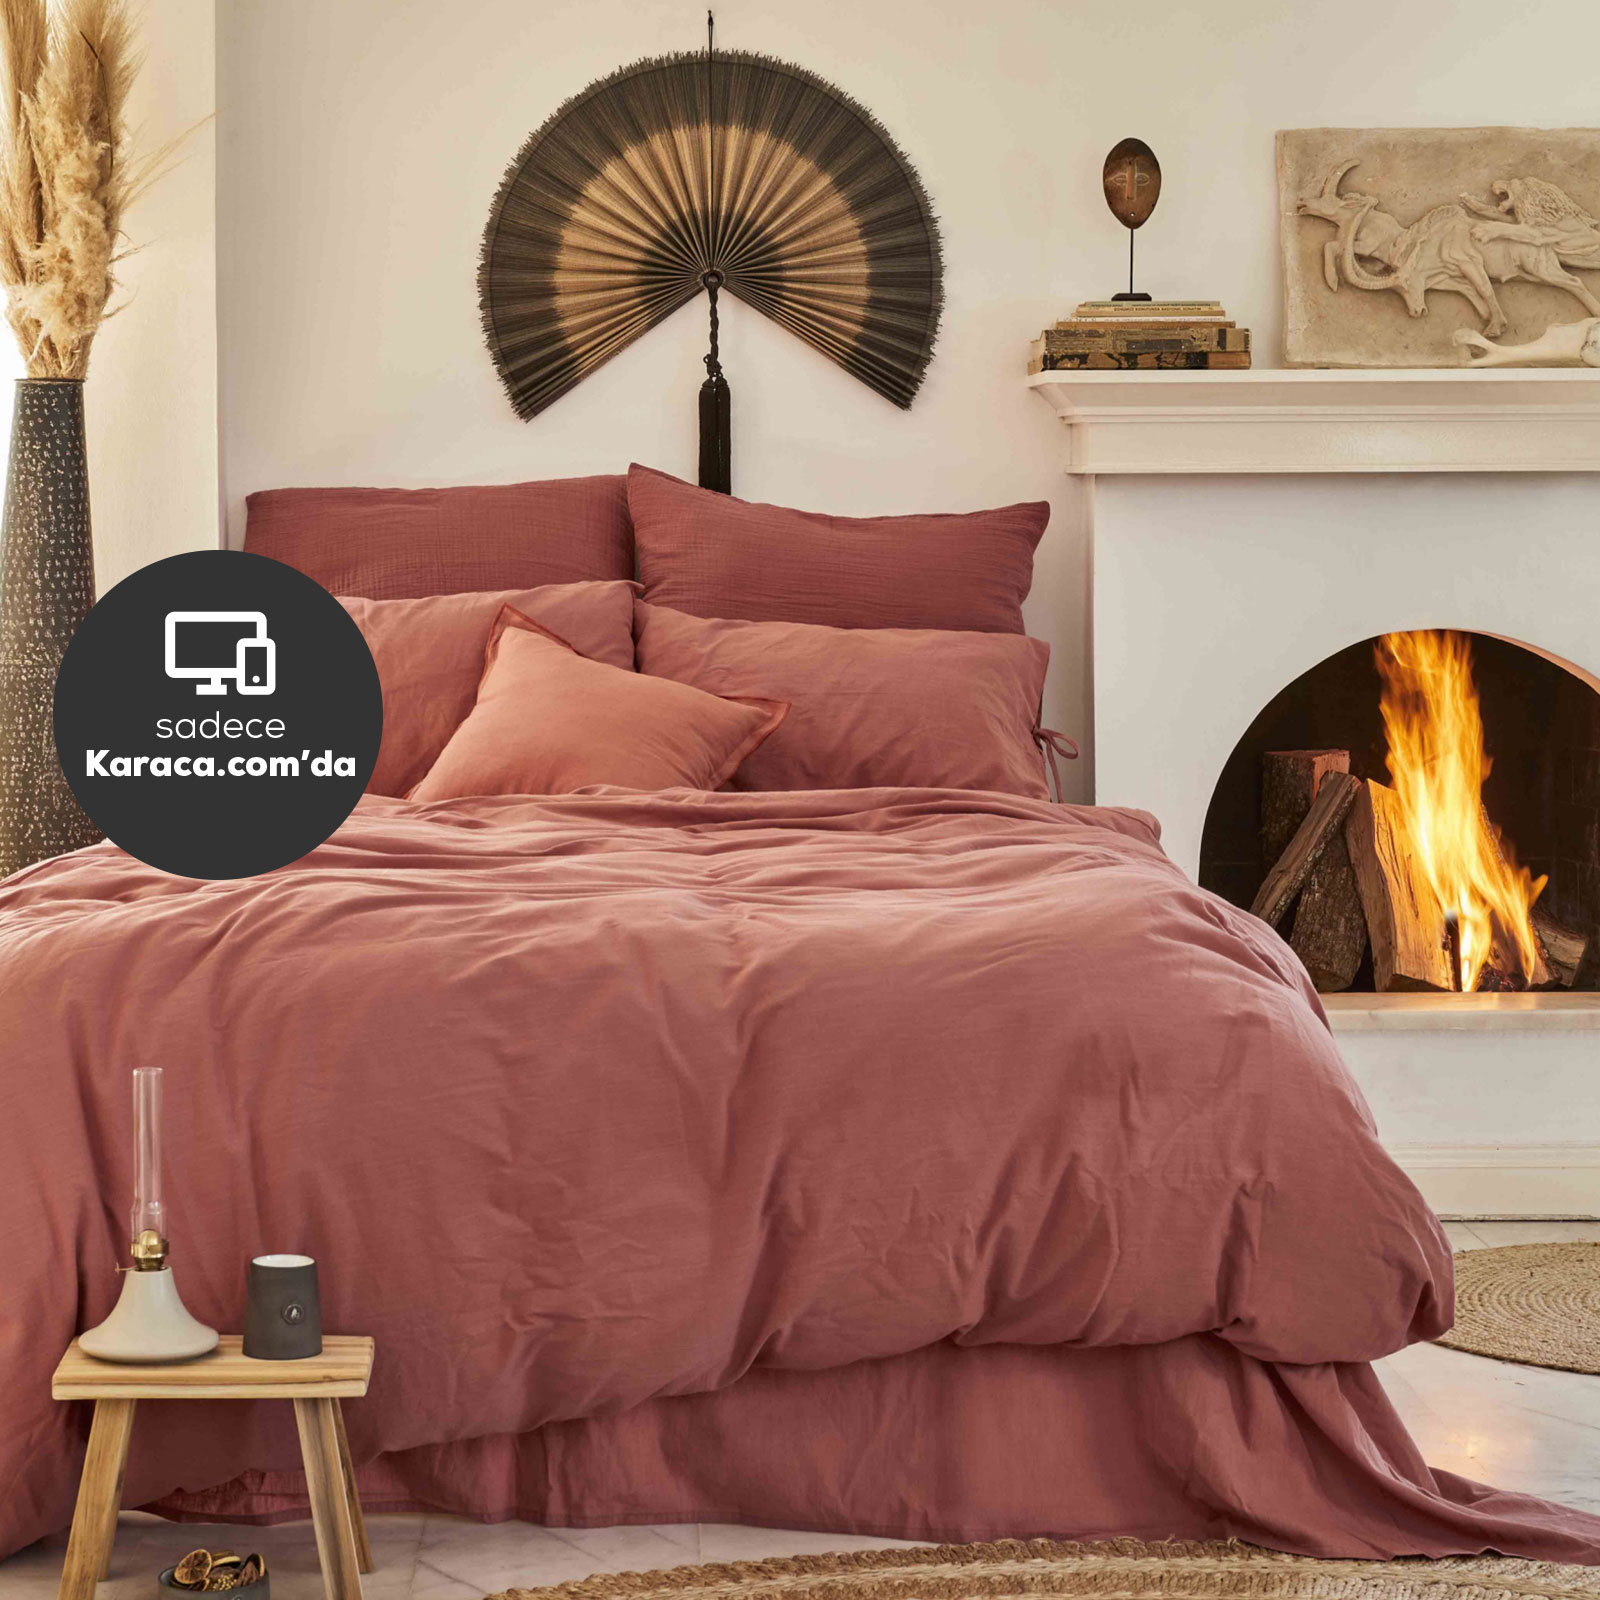 Karaca Home 4 Element Terracotta %100 Pamuk Çift Kişilik Nevresim Takımı Ateş